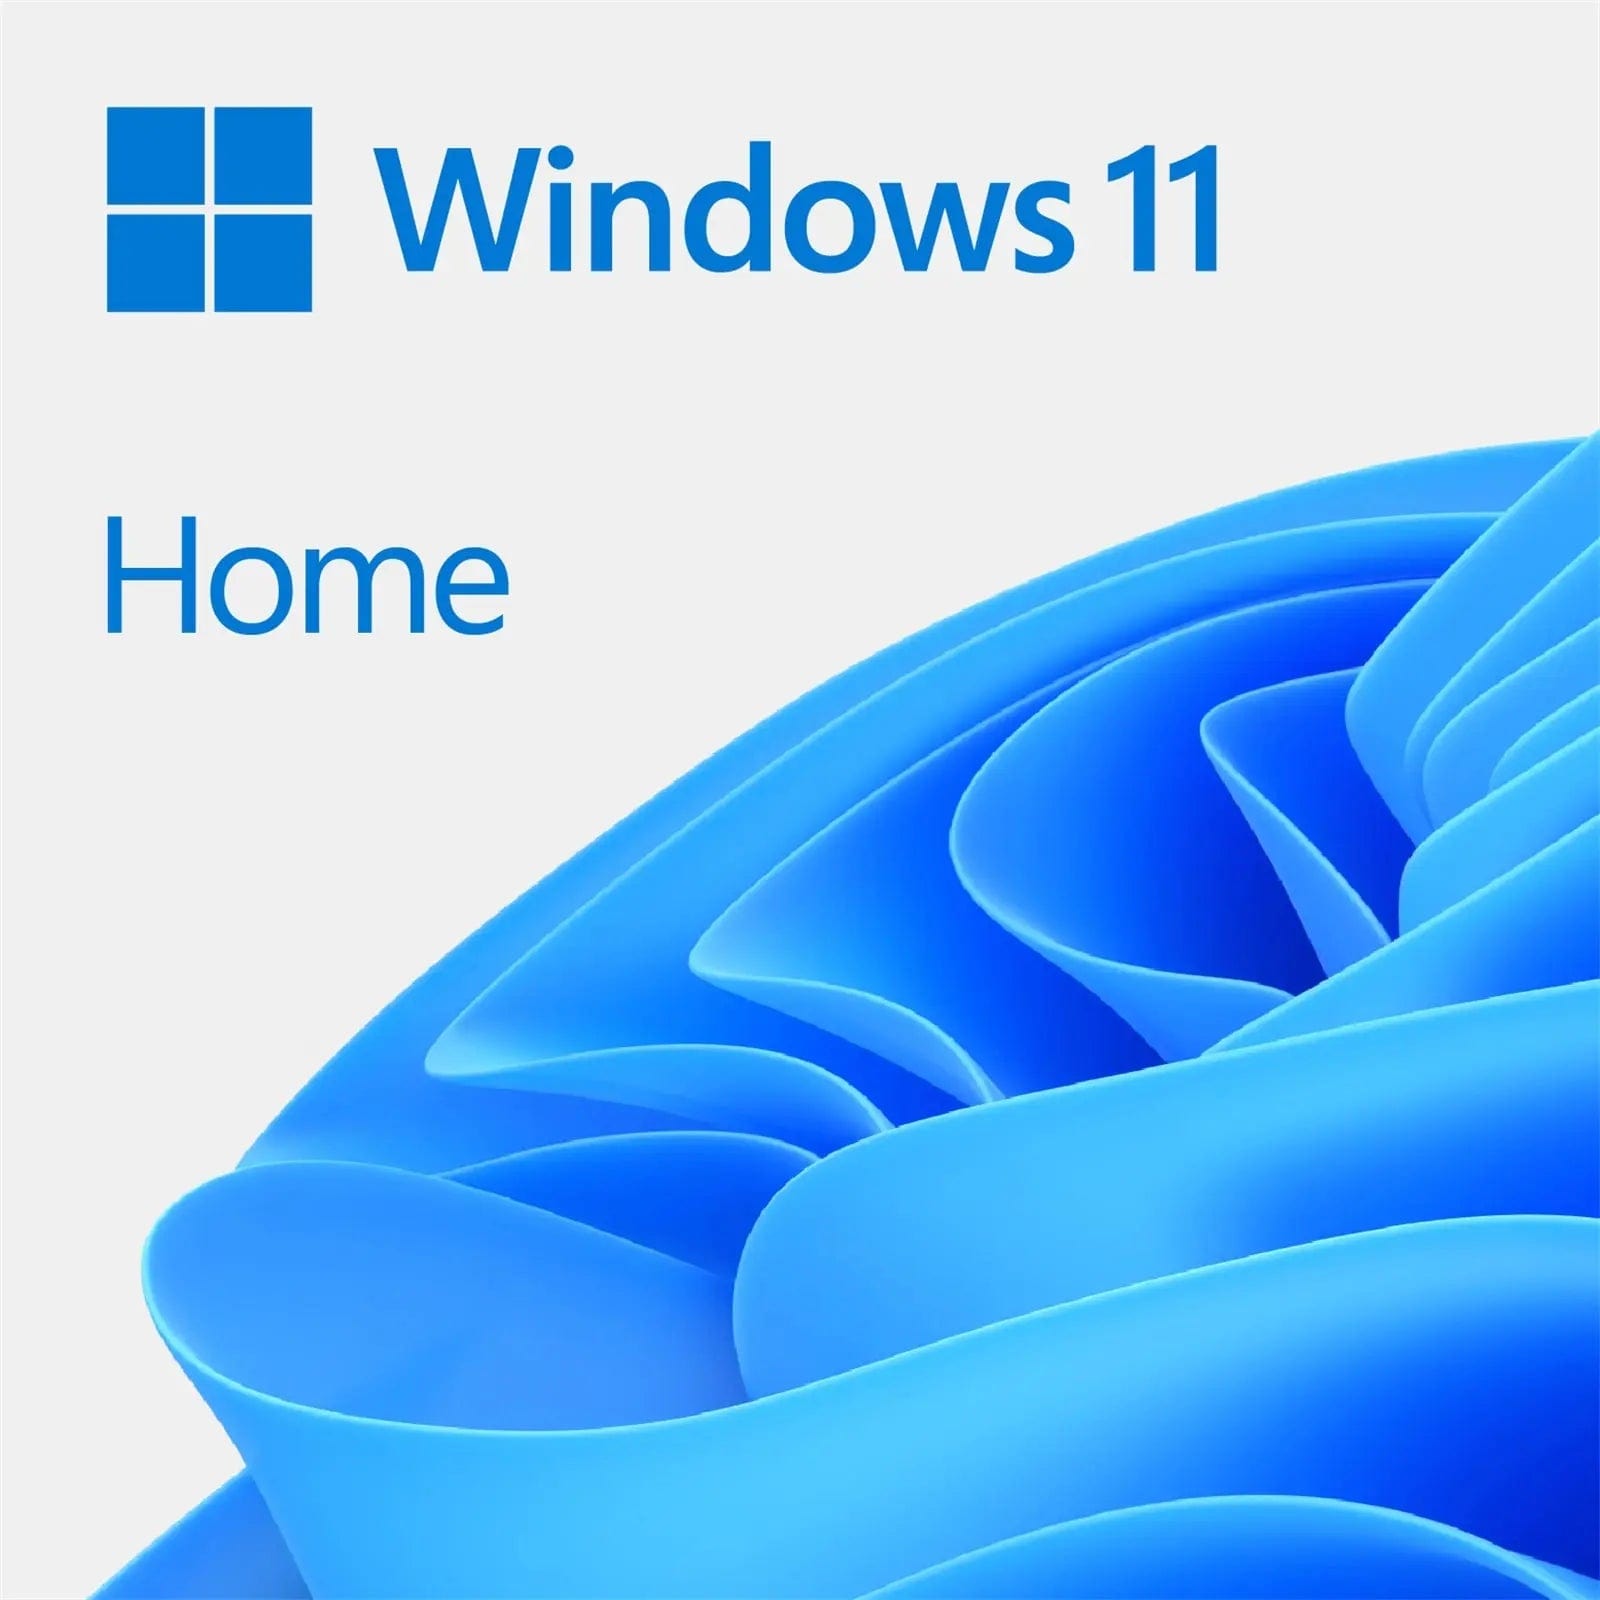 Windows 11 Home - Regen Computers